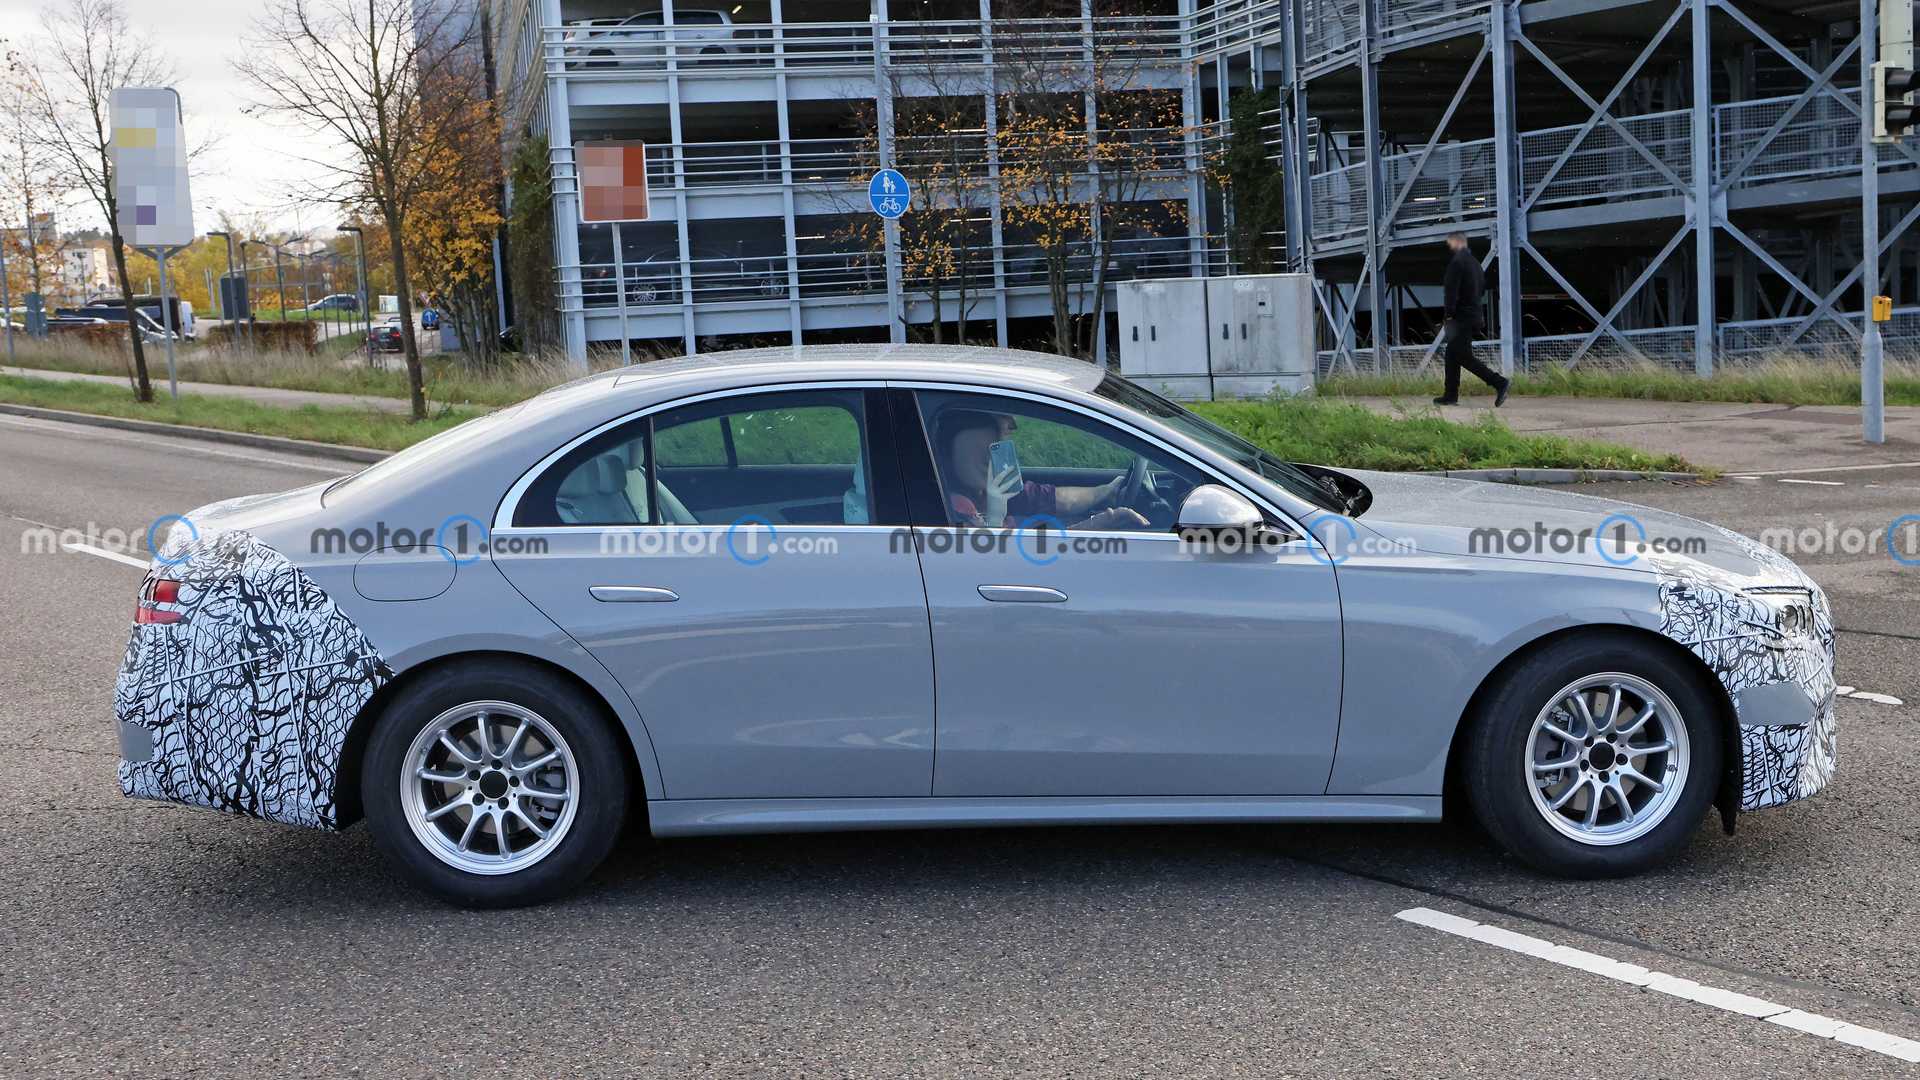 next-gen-mercedes-benz-e-class-sedan-side-view-spy-photo (1).jpg